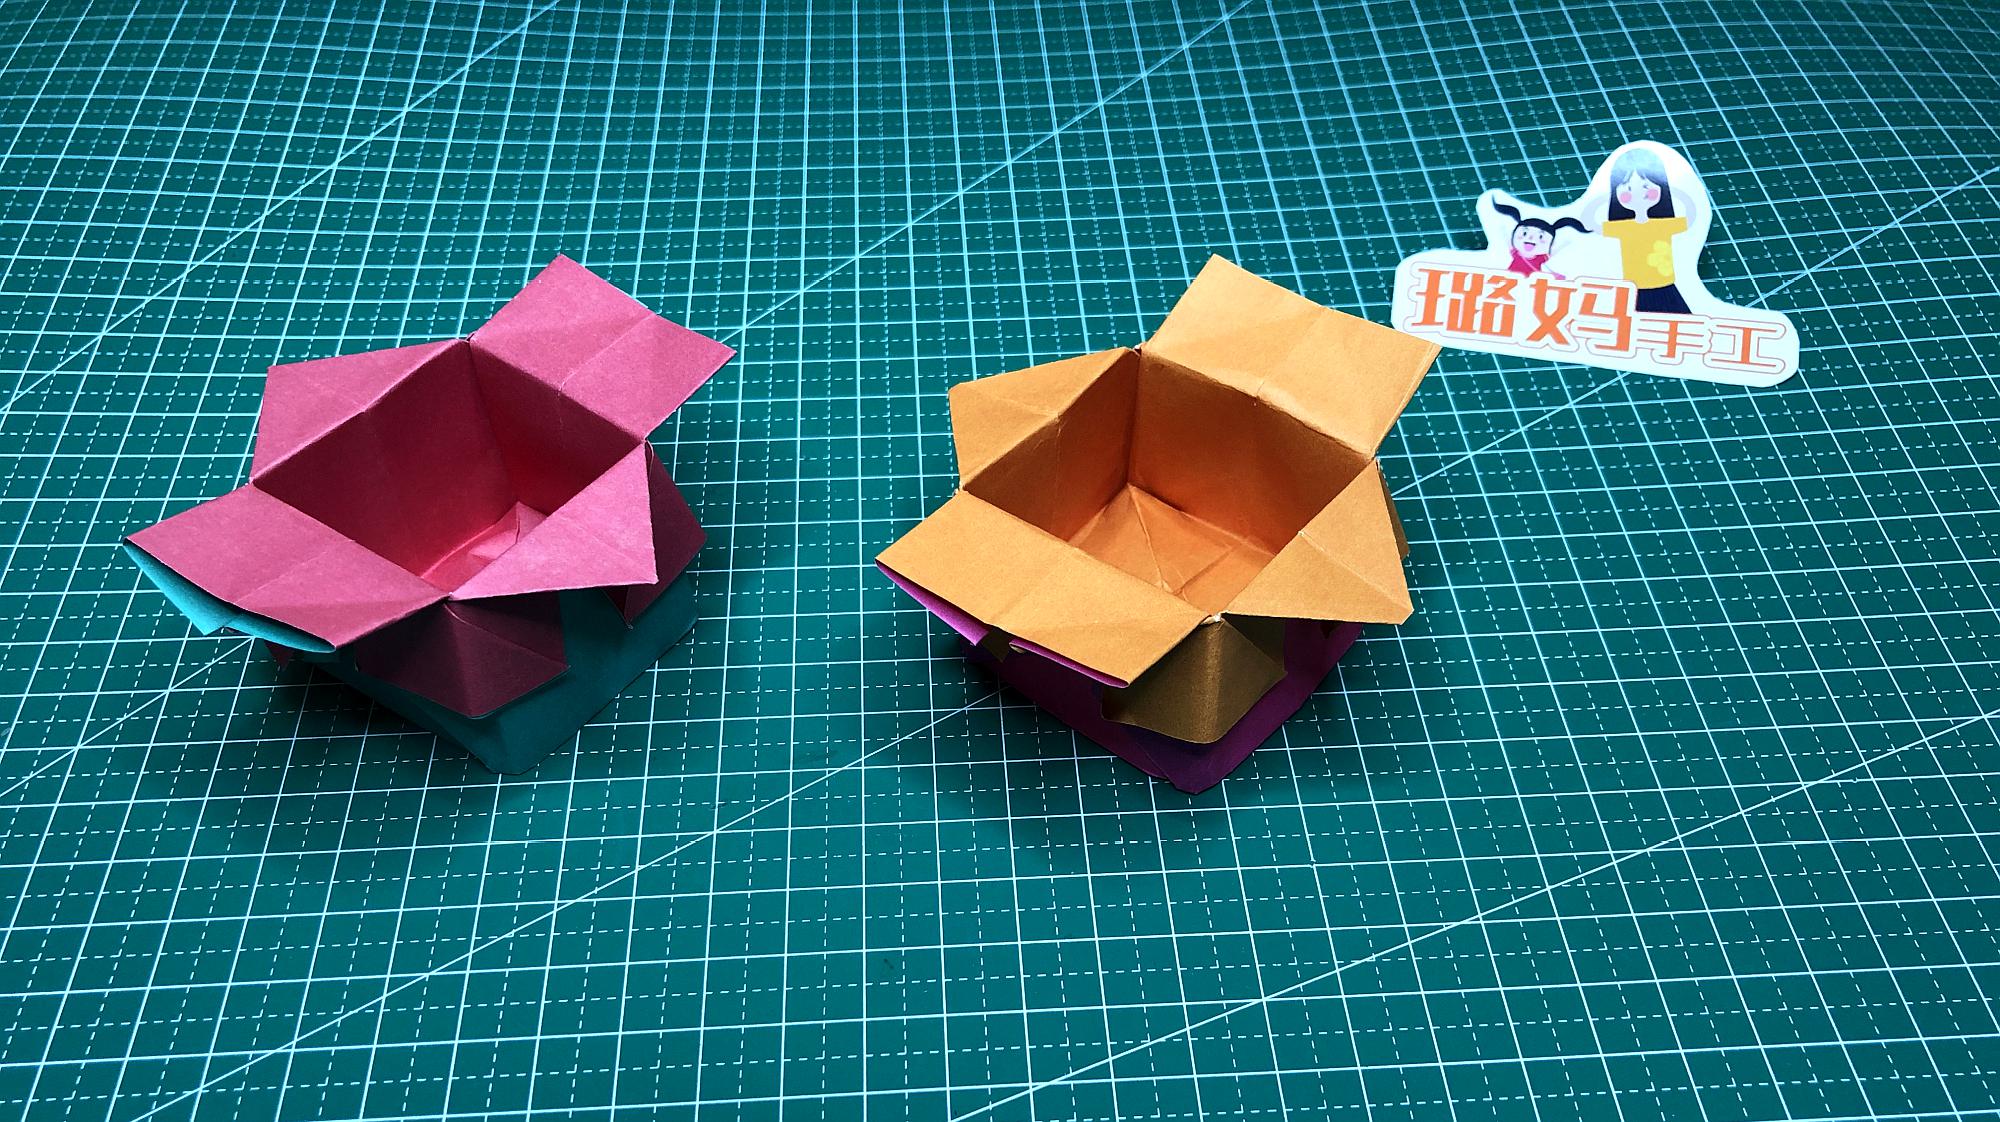 当作礼物盒也不错  05:00  来源:好看视频-儿童手工折纸心形盒子,简单